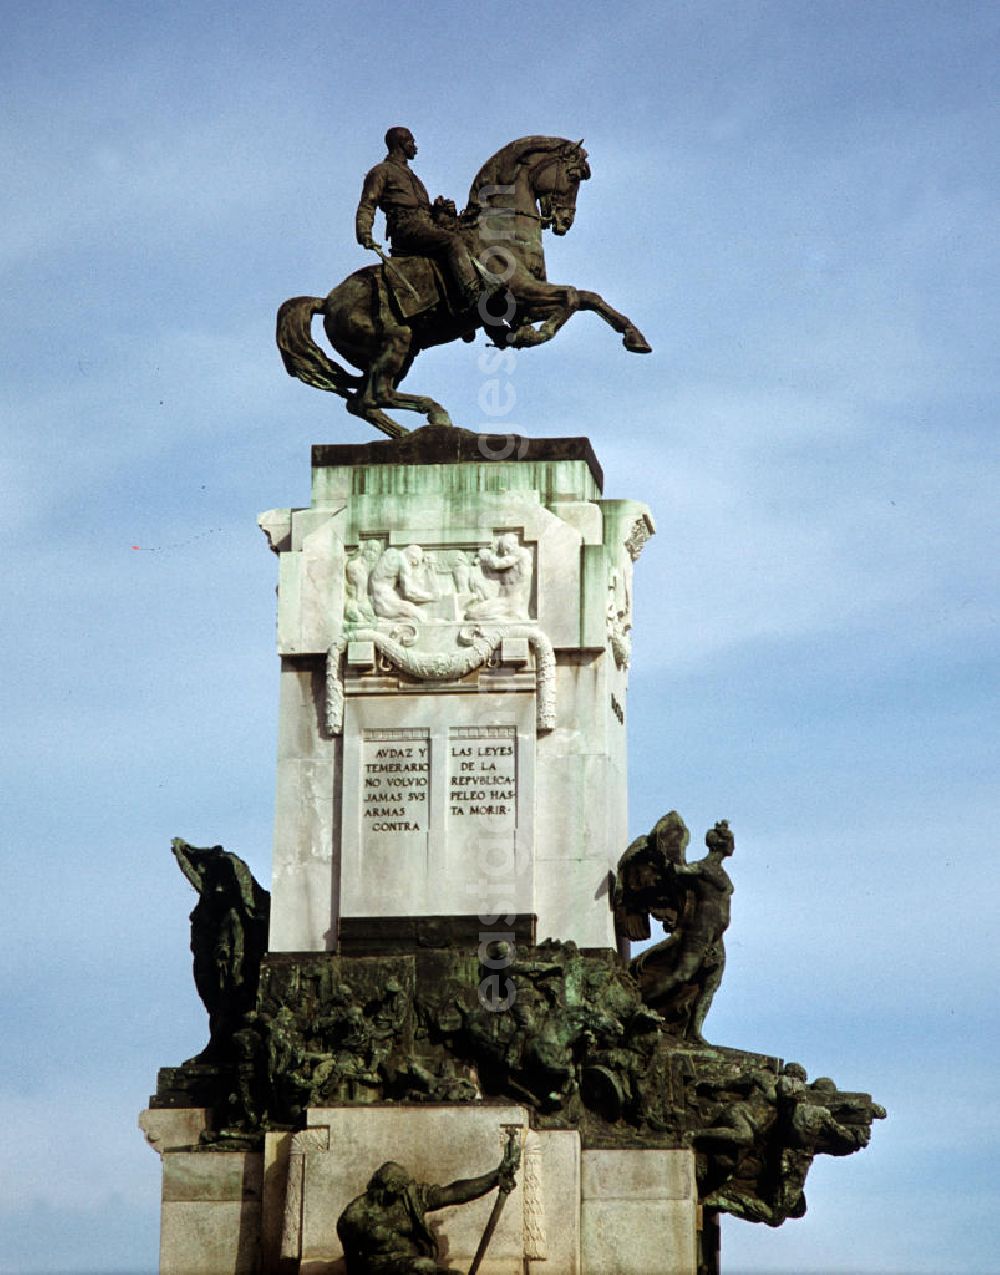 GDR image archive: Havanna - Blick auf das Monument des Generals Antonio Maceo in einem Park an der Uferpromenade Malecón in Havanna in Kuba. Maceo kämpfte im 19. Jahrhundert mit den kubanischen Truppen gegen Spanien für die Unabhängigkeit der Insel und gilt in Kuba als Volksheld.